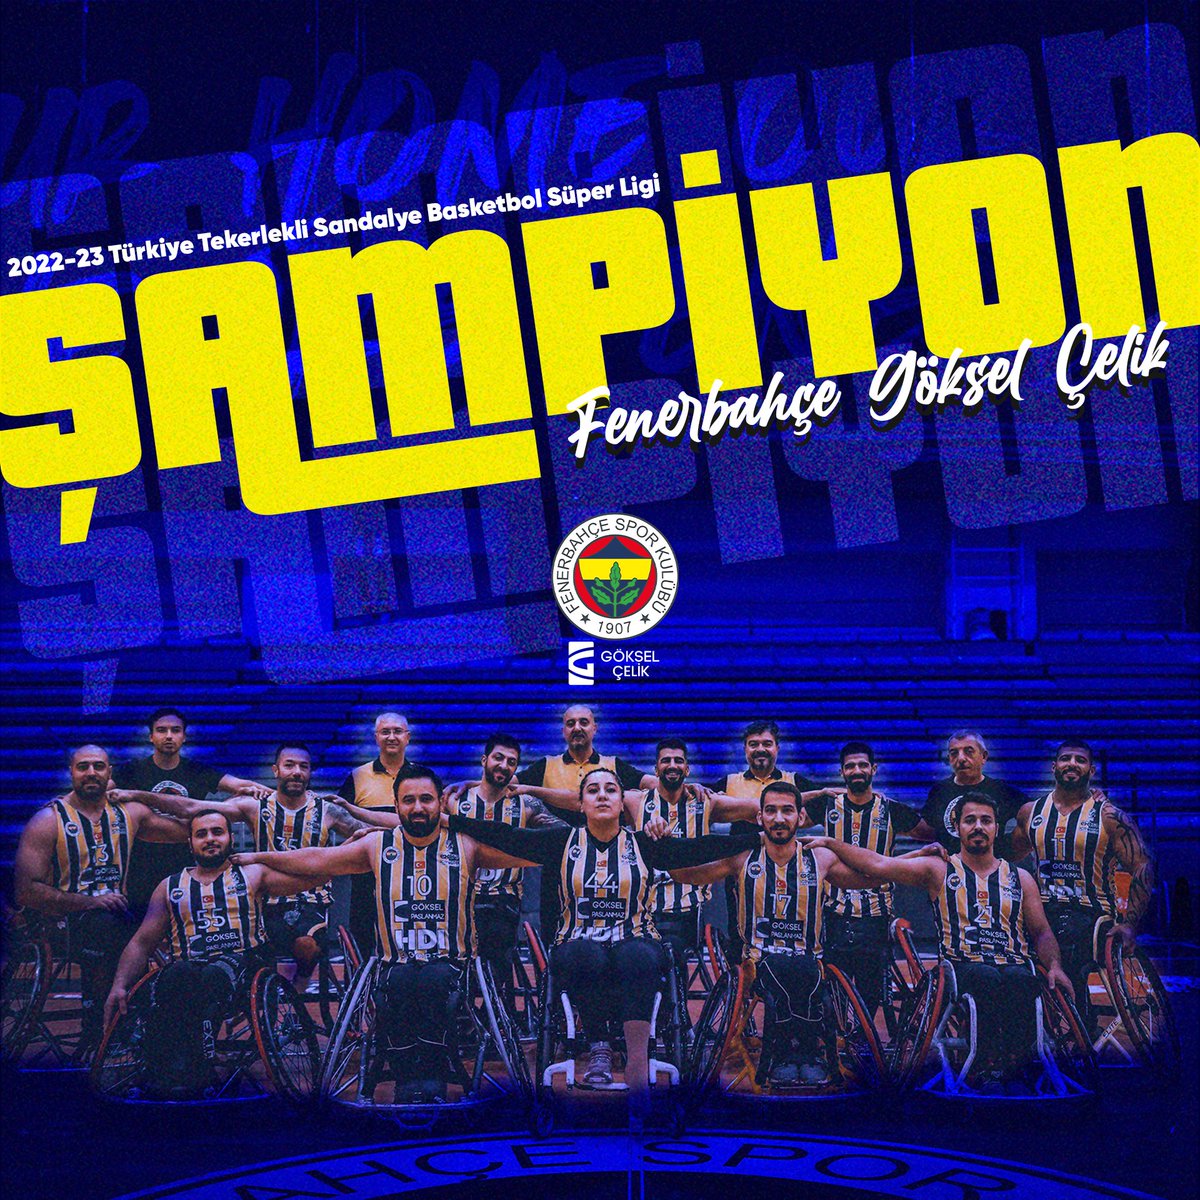 🏆 Üst üste 2. Kez Türkiye Tekerlekli Sandalye Basketbol Süper Ligi Şampiyonu Fenerbahçe Göksel Çelik! 💛💙🤩

#WeAreFenerbahçe 💪